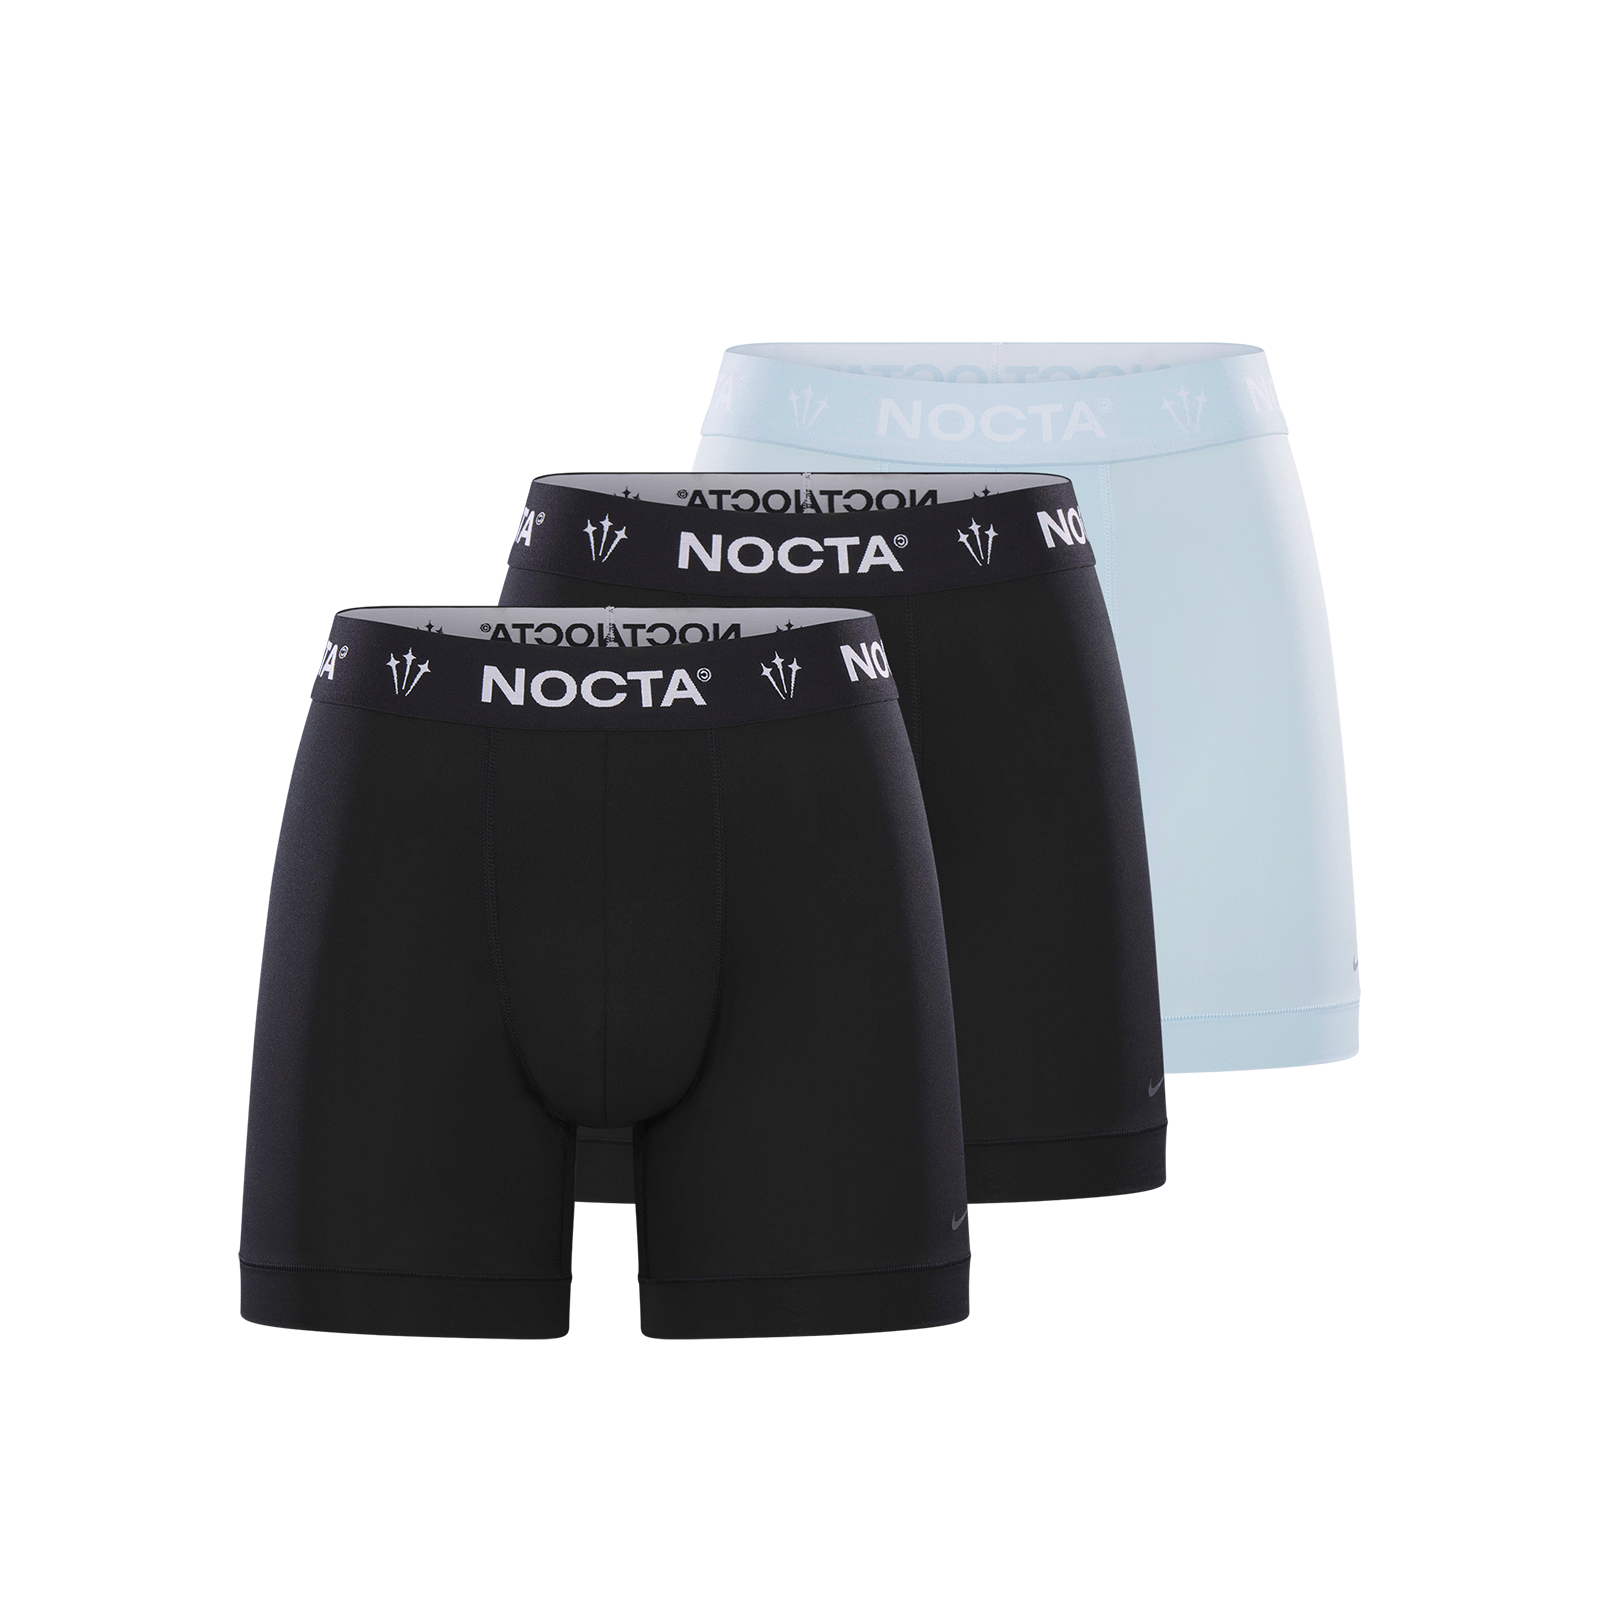 7,200円Nike Nocta Boxer Briefs 3pack ボクサーパンツ